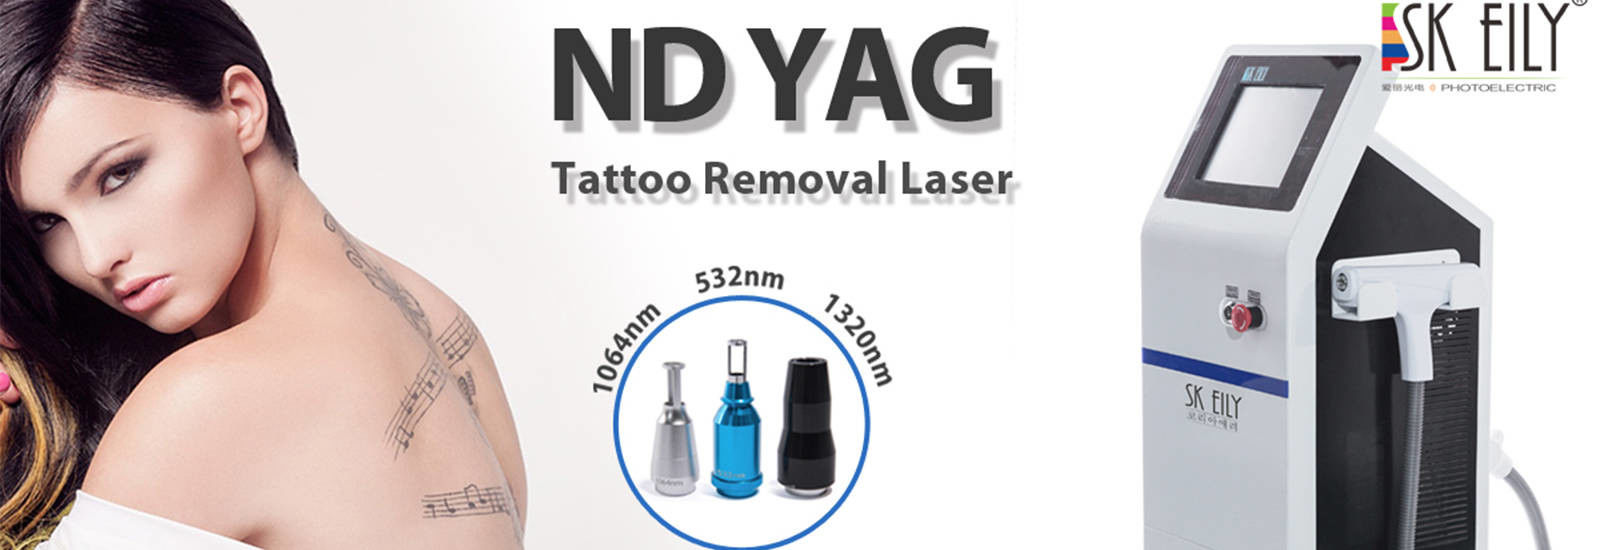 qualidade Máquina da remoção da tatuagem do laser do ND Yag fábrica